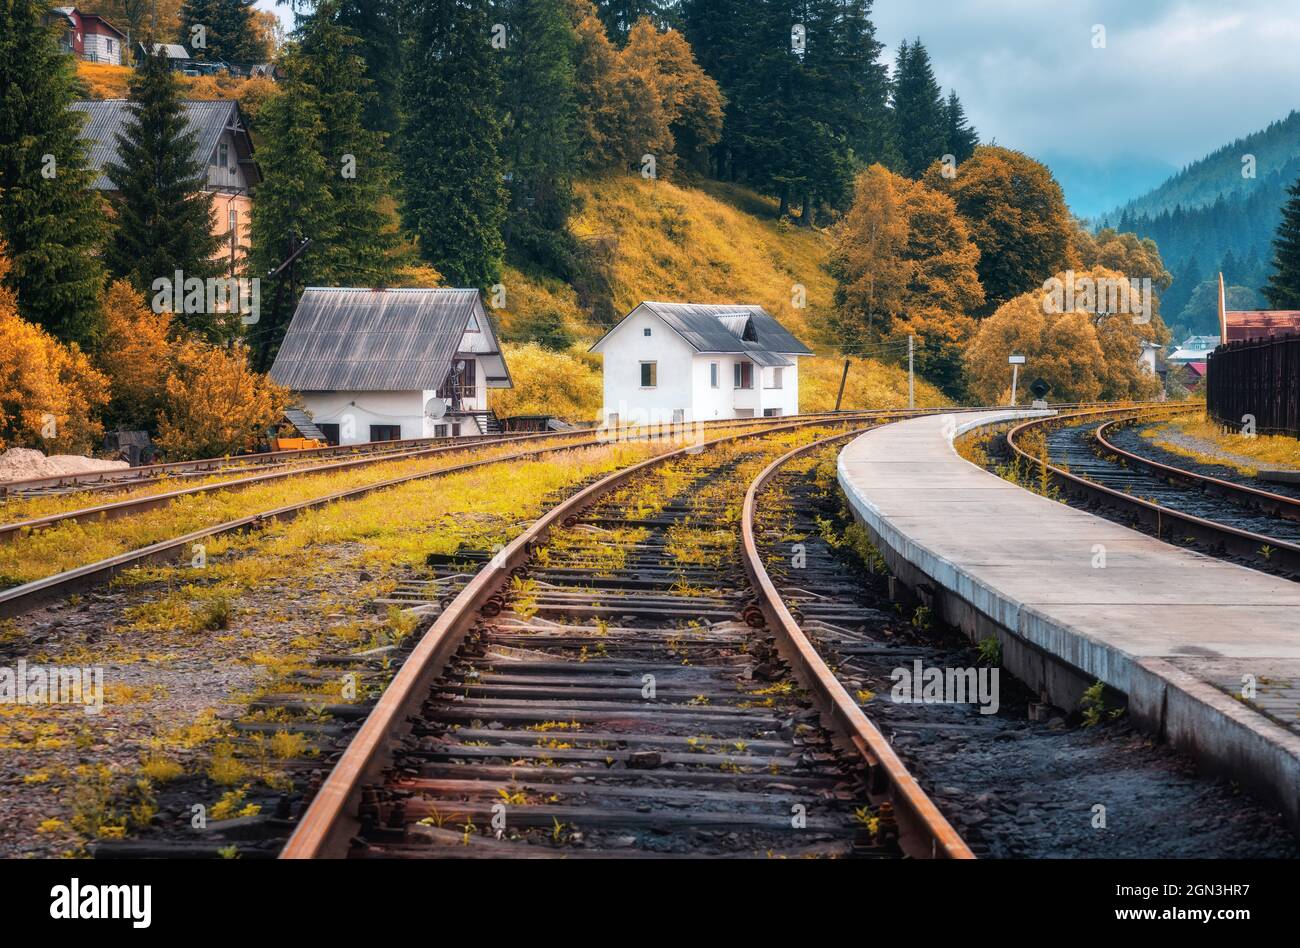 Estación de tren y casa blanca en el pueblo de montaña al atardecer Foto de stock